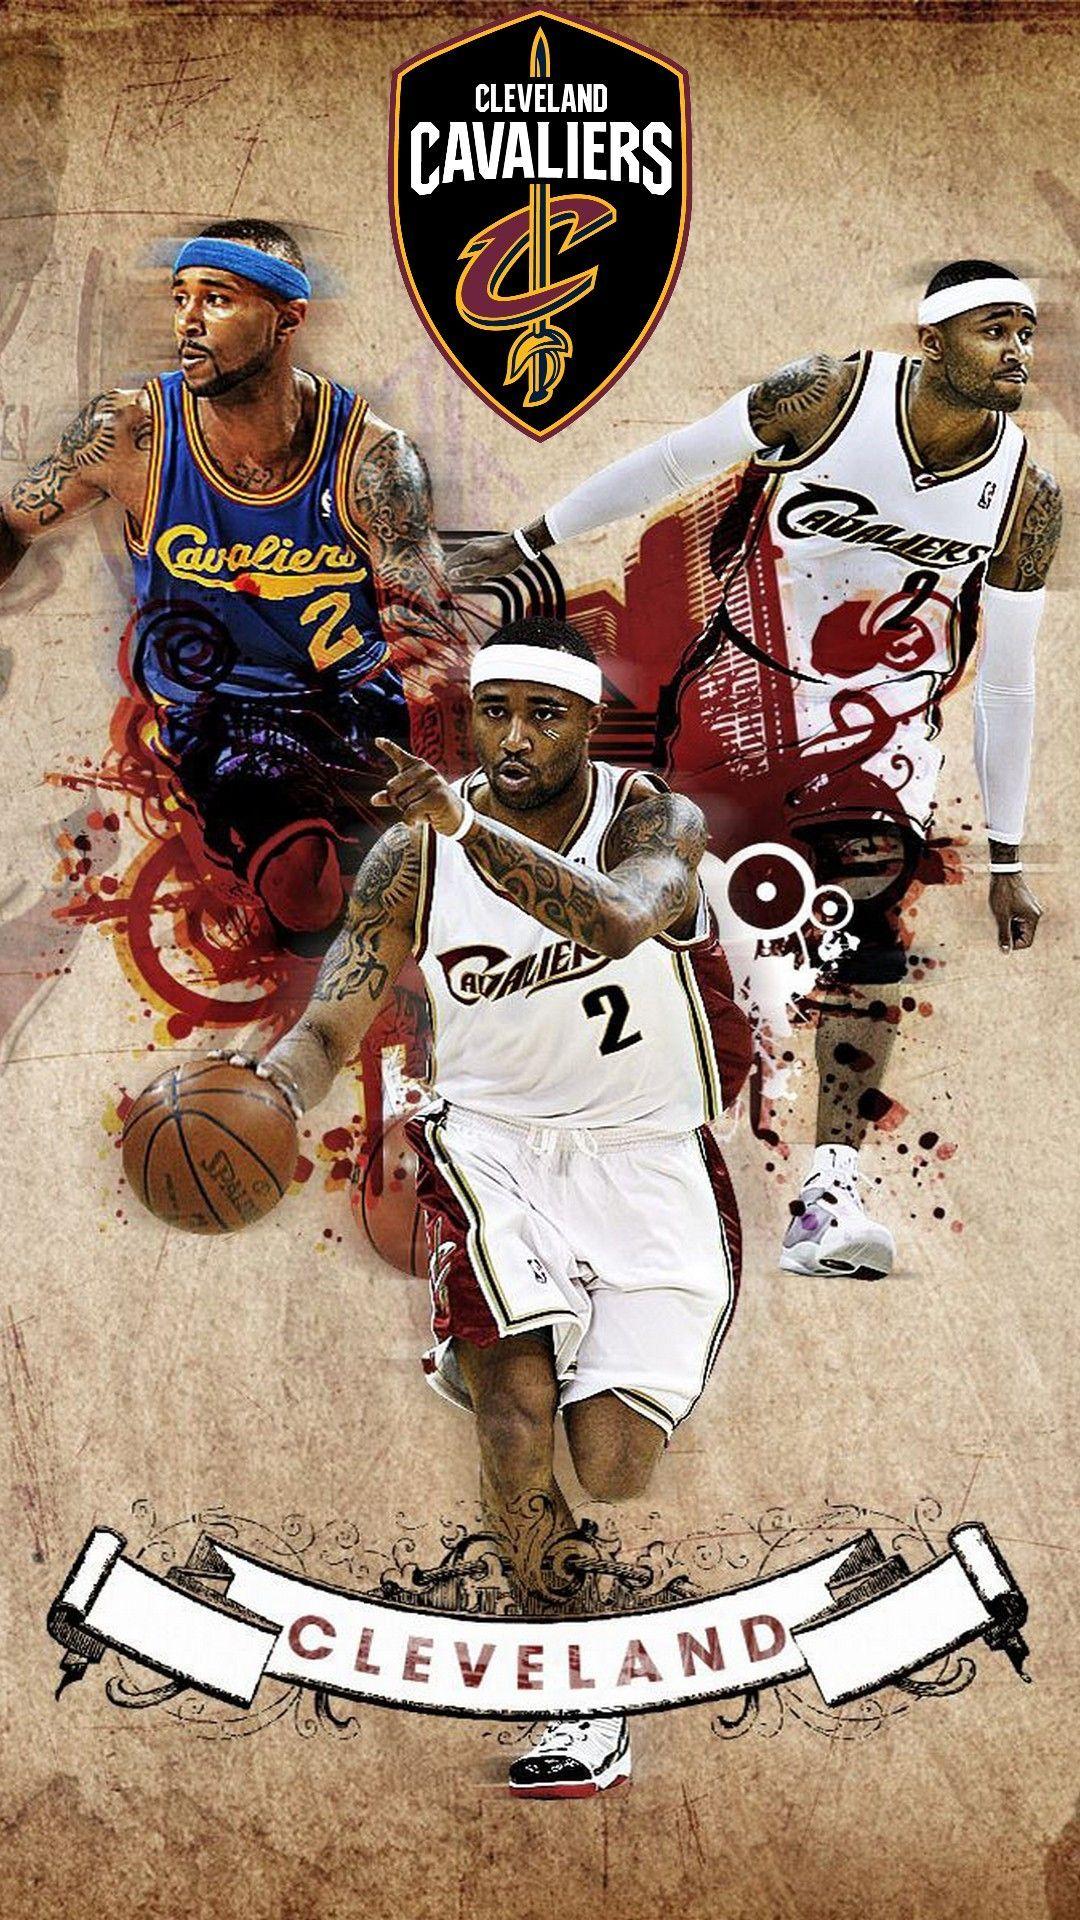 Basketball Wallpaper. Best Basketball Wallpaper 2020. Nba wallpaper, Cavaliers nba, Basketball wallpaper